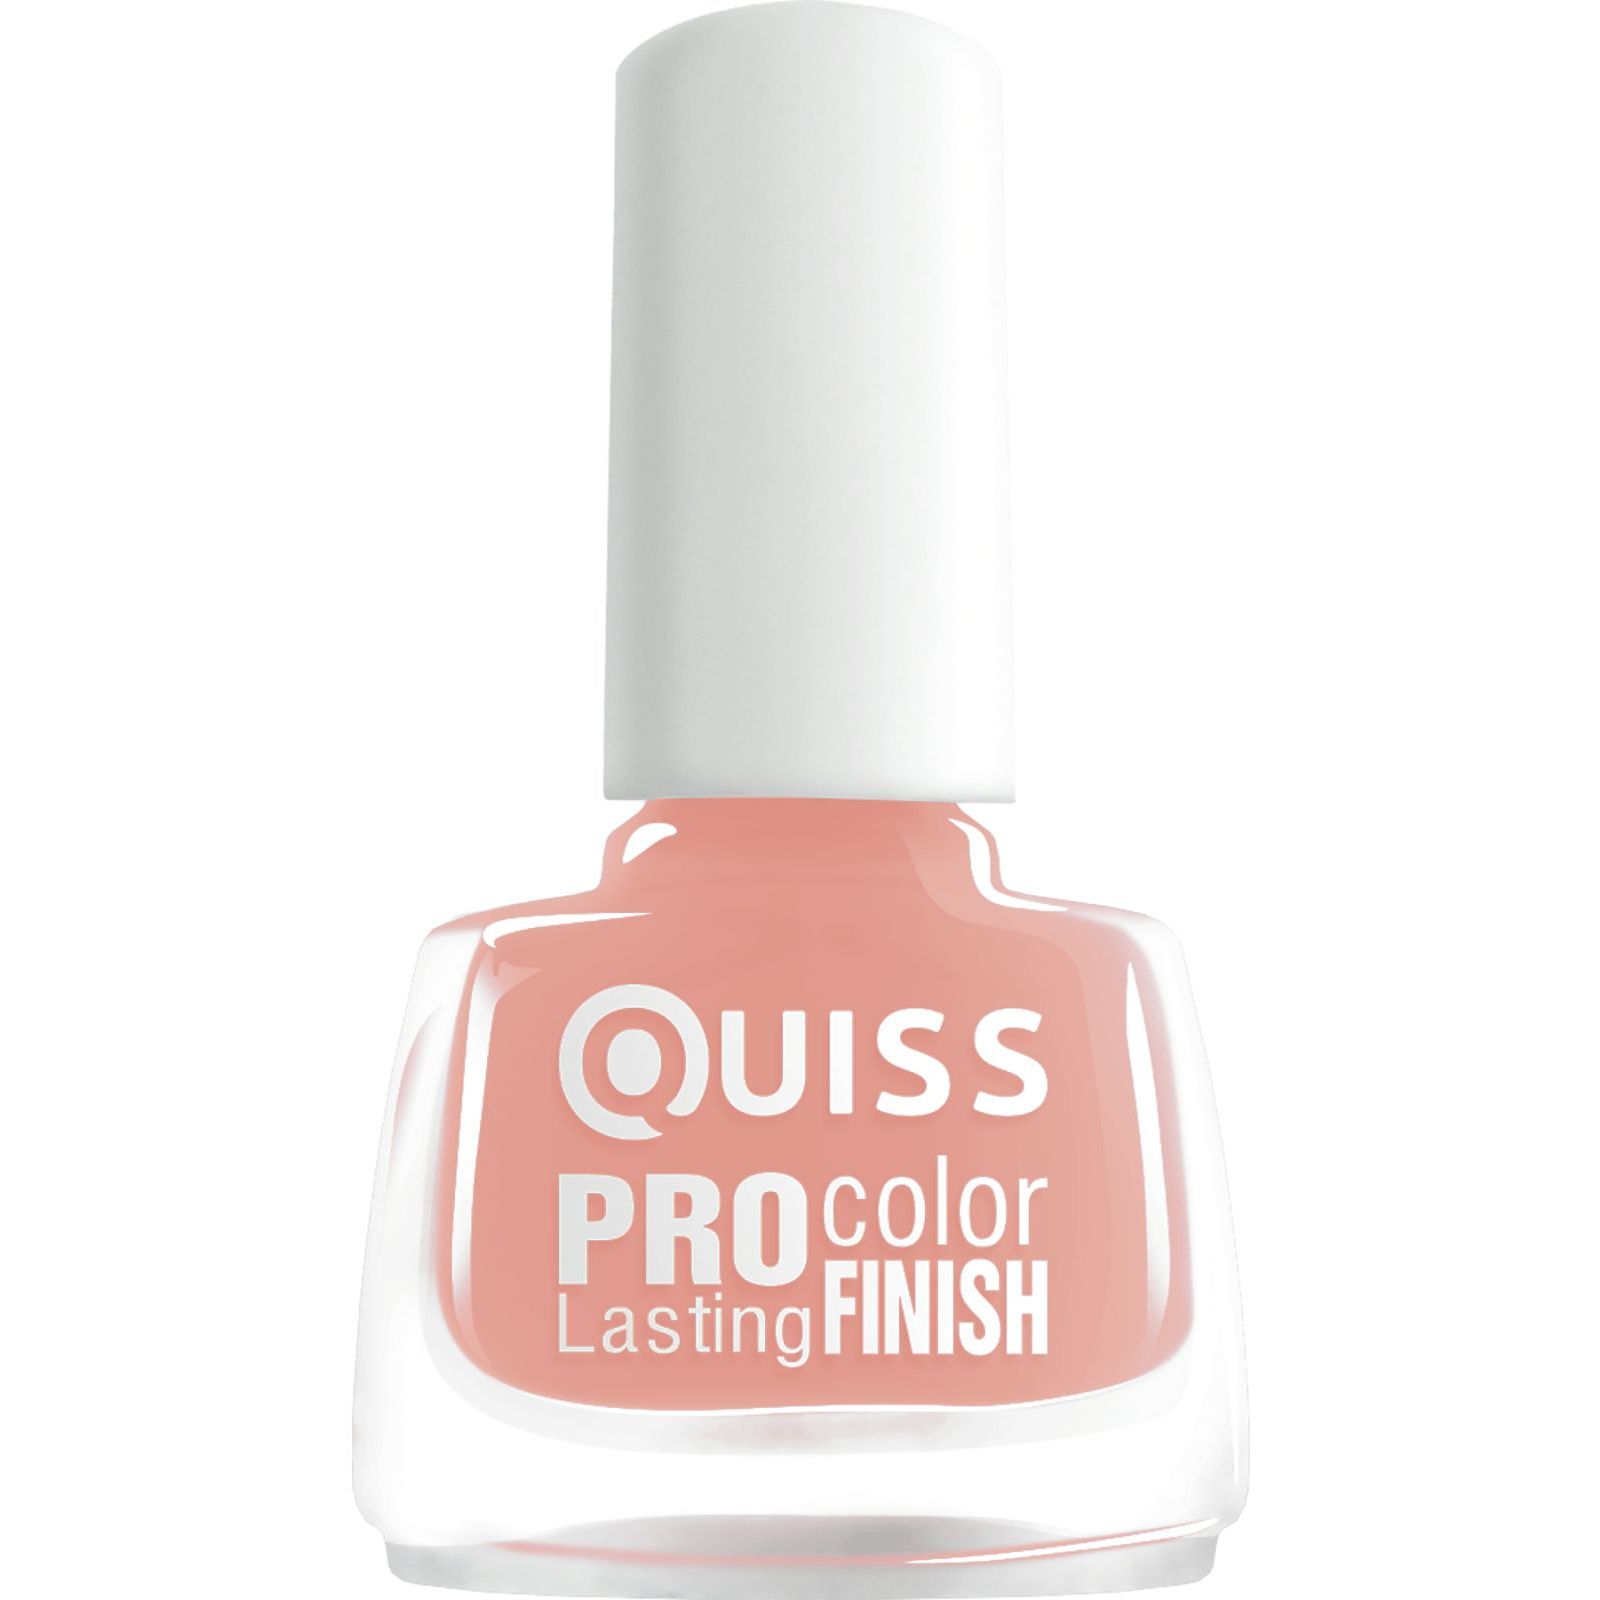 Лак для нігтів Quiss Pro Color Lasting Finish відтінок 004, 6 мл - фото 1